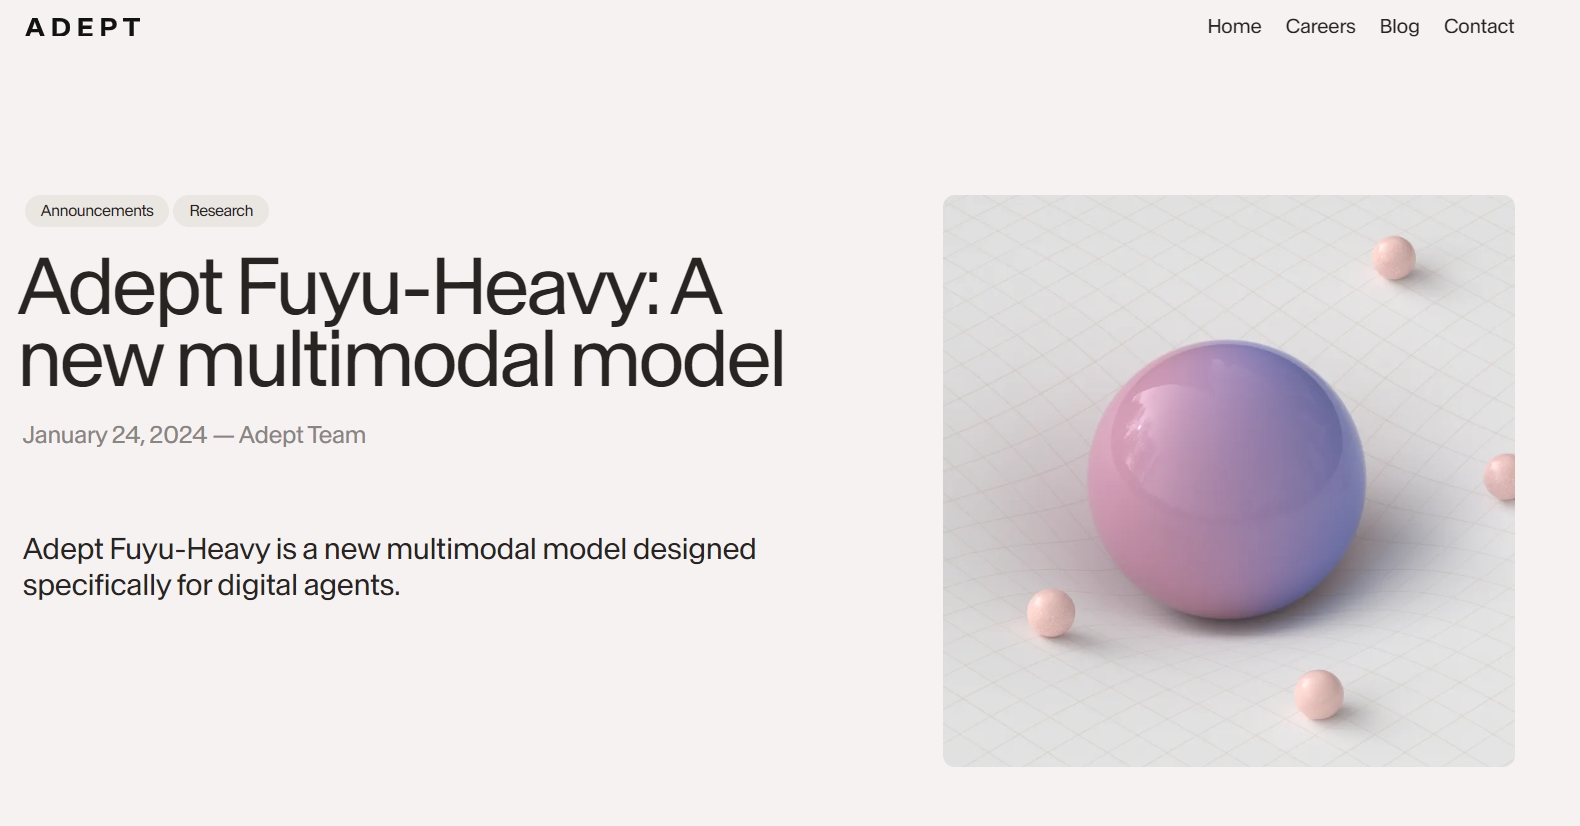 新型多模态模型Adept Fuyu-Heavy 专为数字代理设计